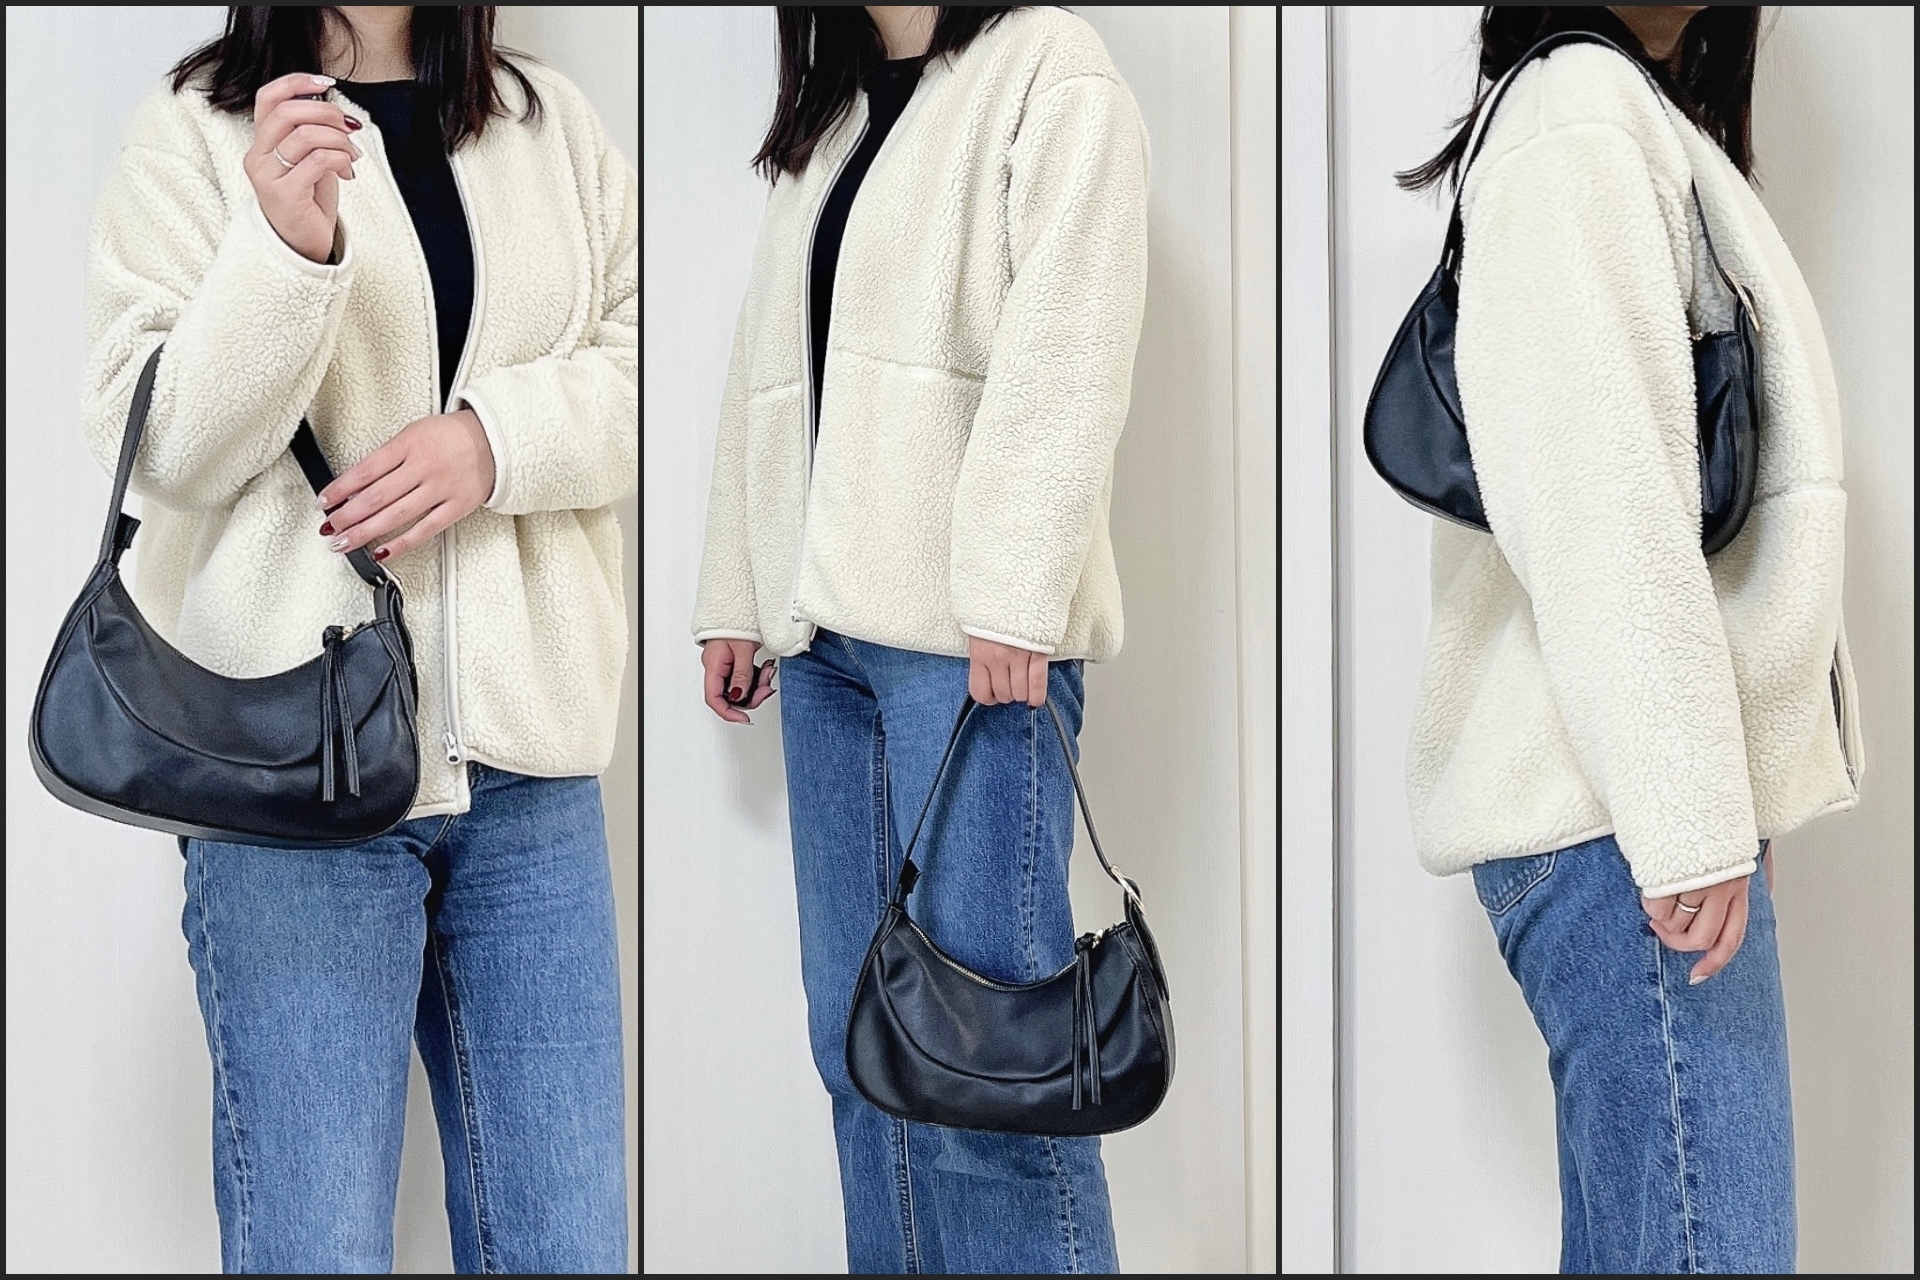 ニコアンドのおすすめファッションアイテム「オリジナル変形バックルショルダーバッグ」